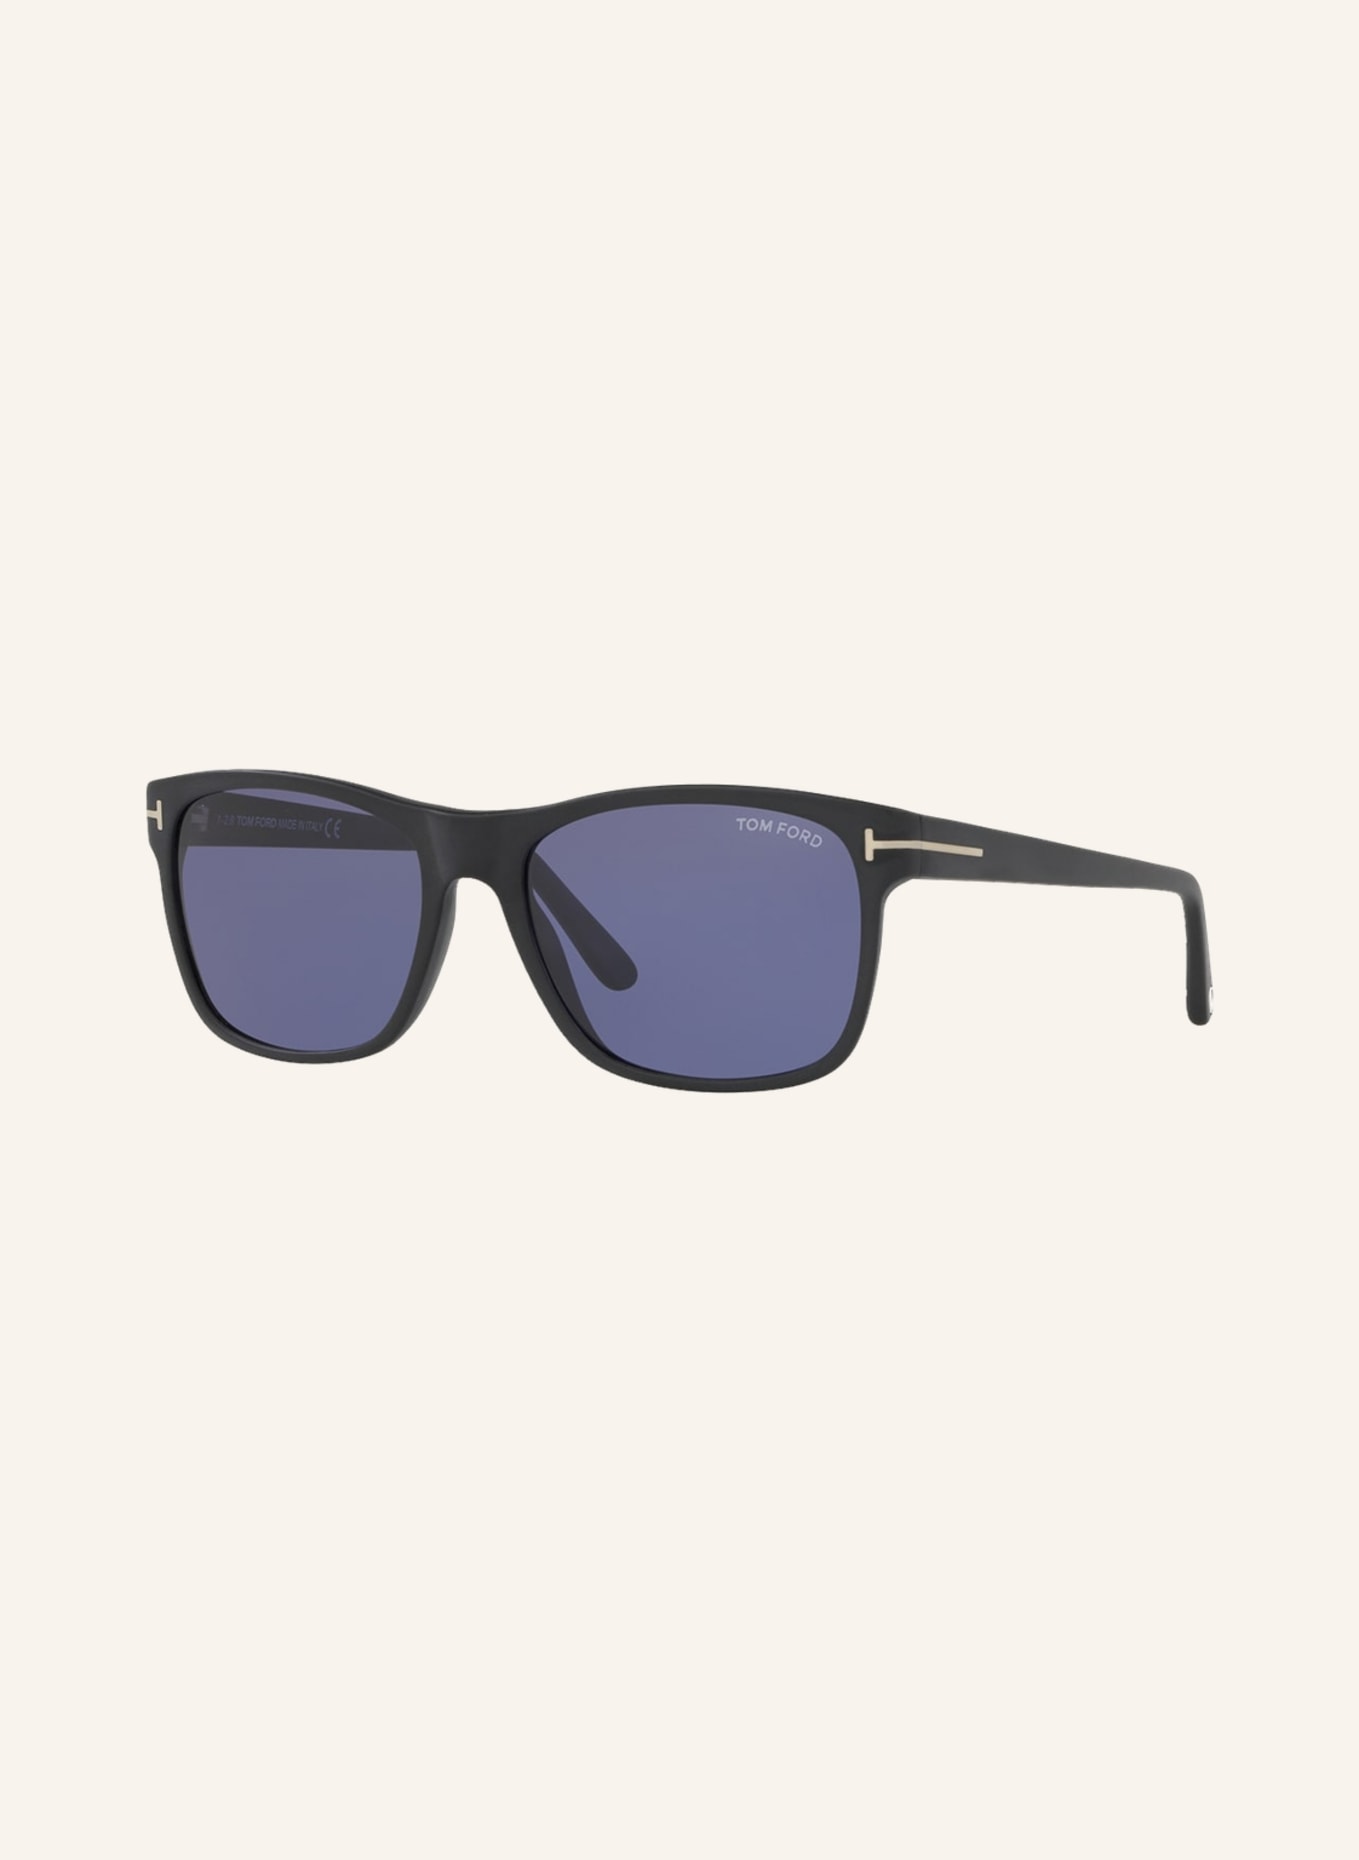 TOM FORD Sunglasses TR001050 GIULIO, Color: 1220B1 - MATTE BLACK/ PURPLE (Image 1)